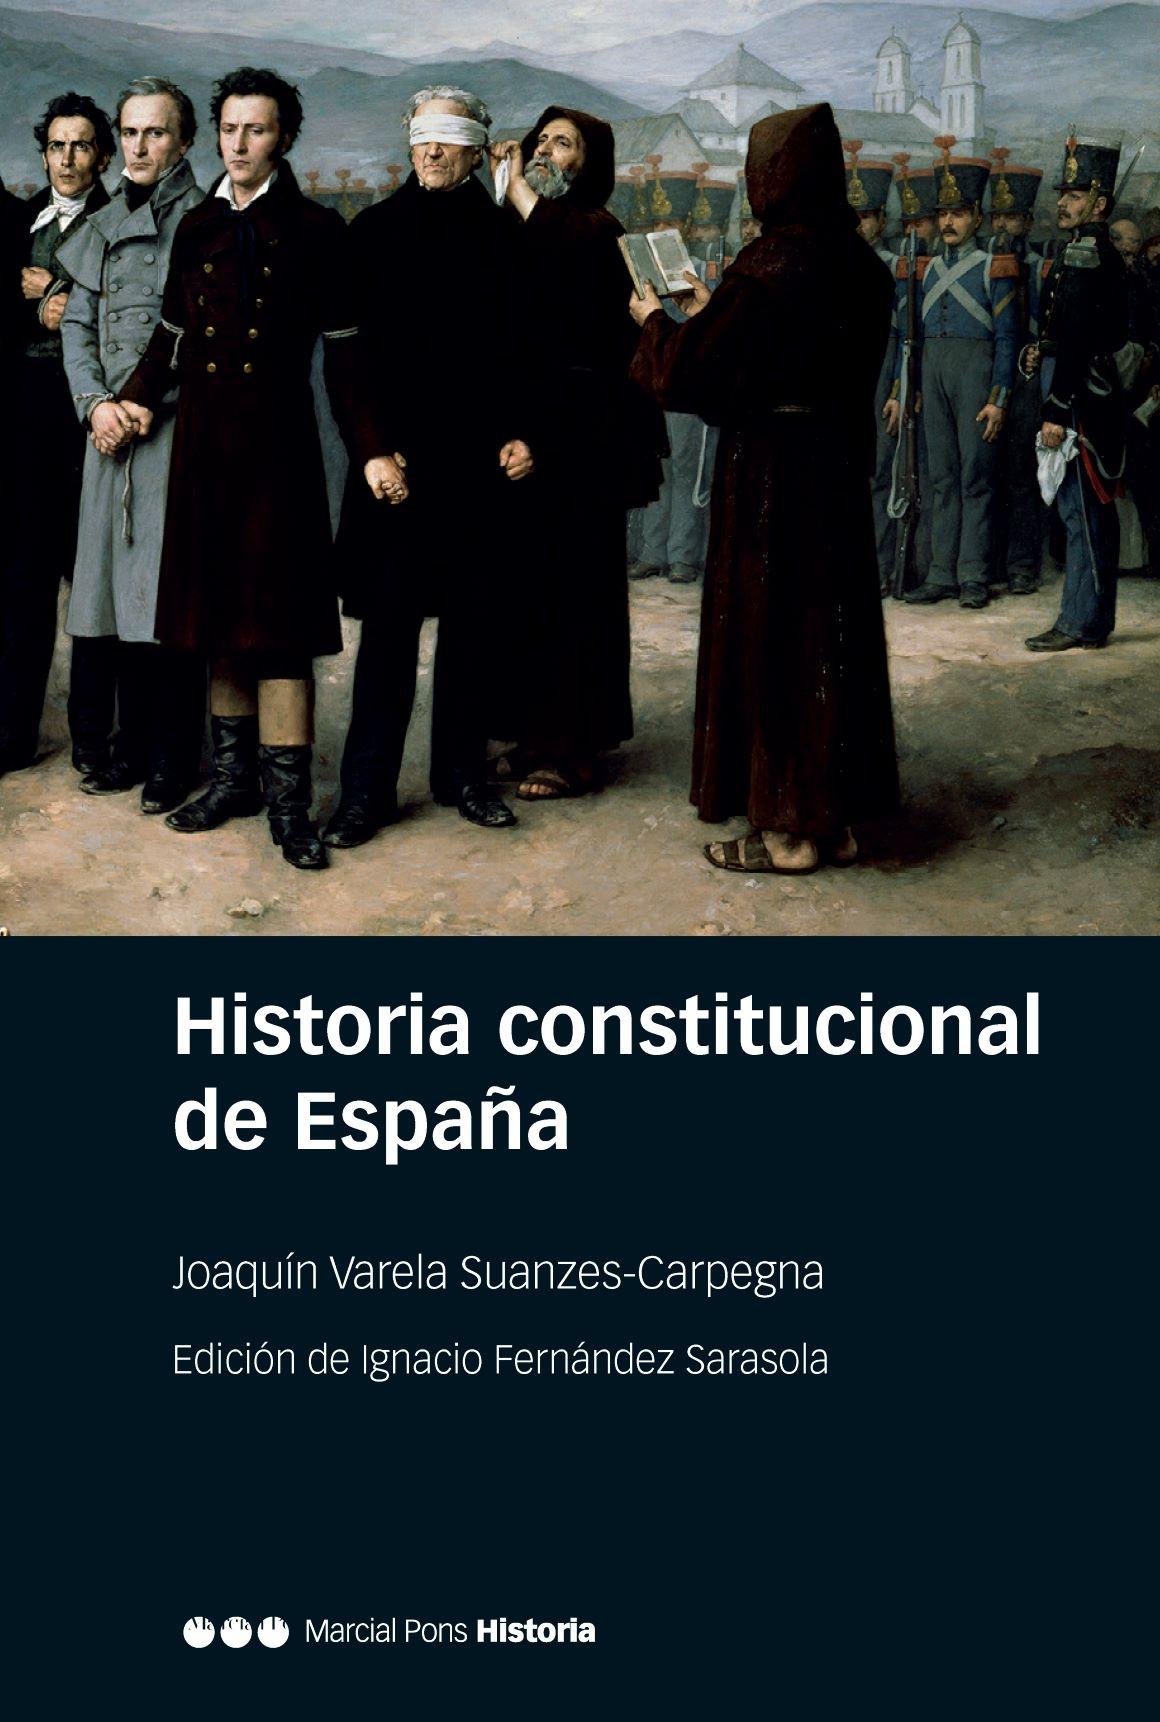 Historia constitucional de España "Normas, instituciones, doctrinas"